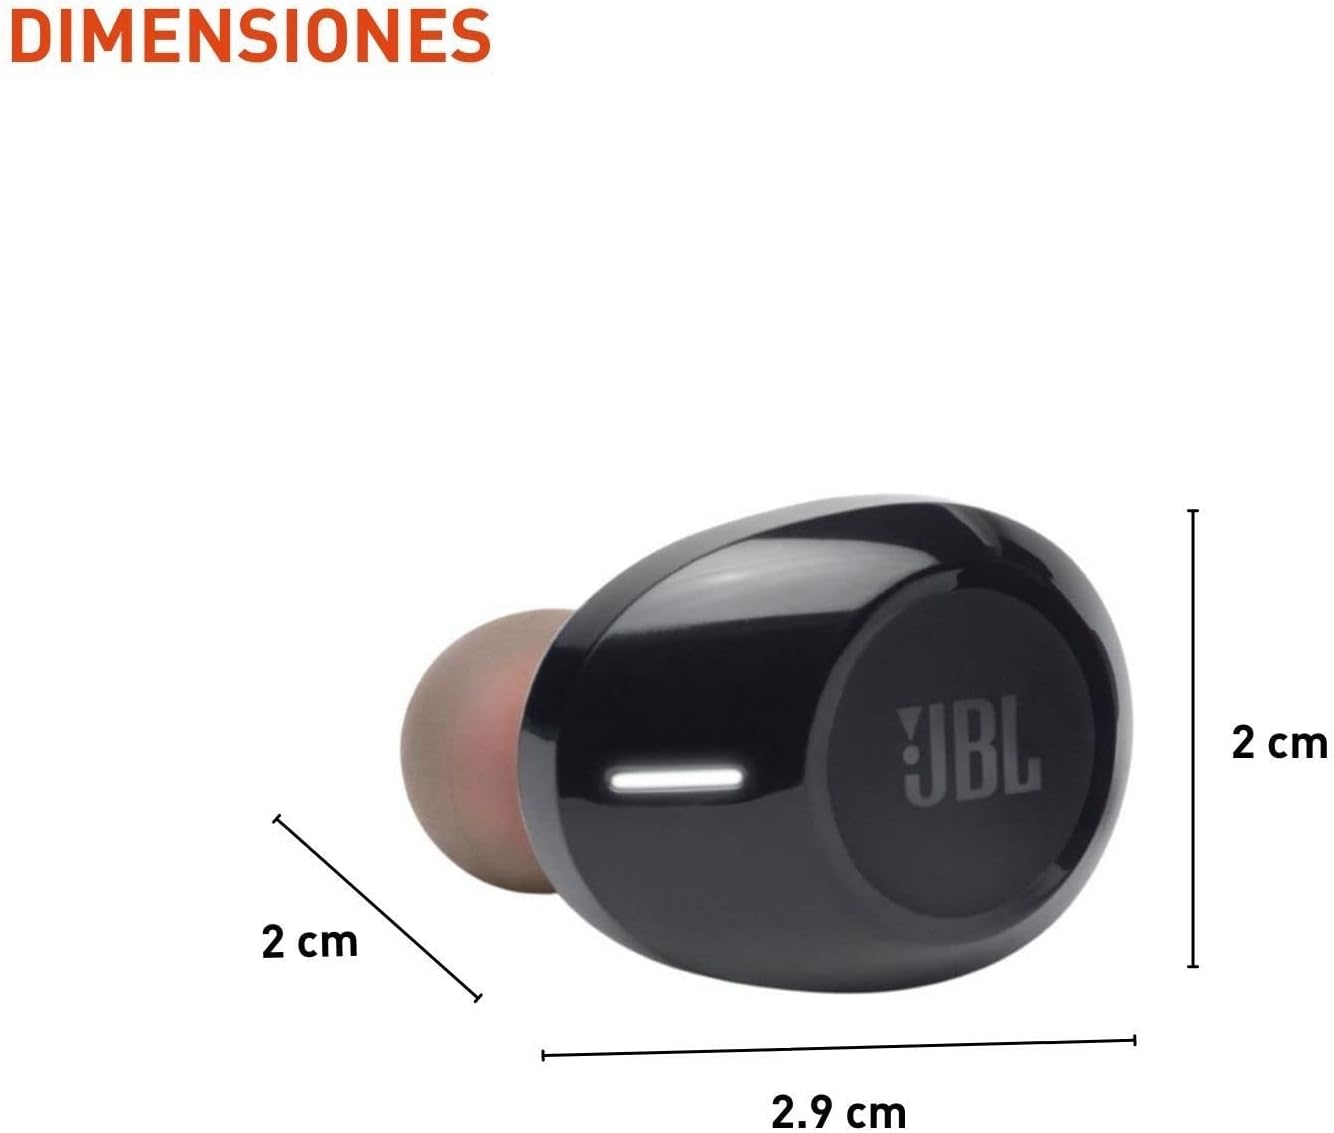 JBL Tune 125TWS True Wireless In-Ear Headphones - (Black) - $30